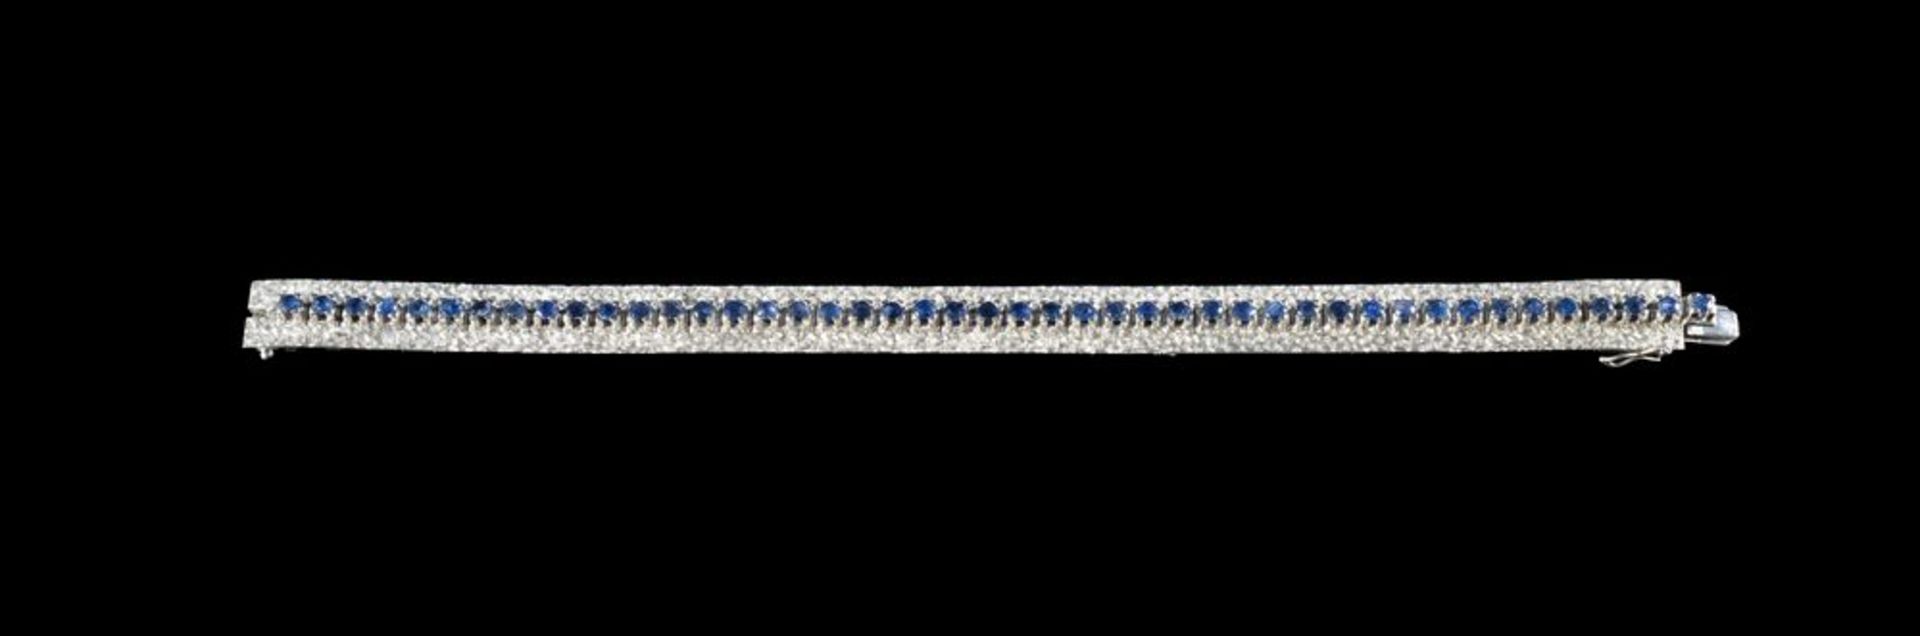 BRACCIALE IN ORO BIANCO CON ZAFFIRI
Prestigioso bracciale in oro bianco 18k con zaffiri taglio brill